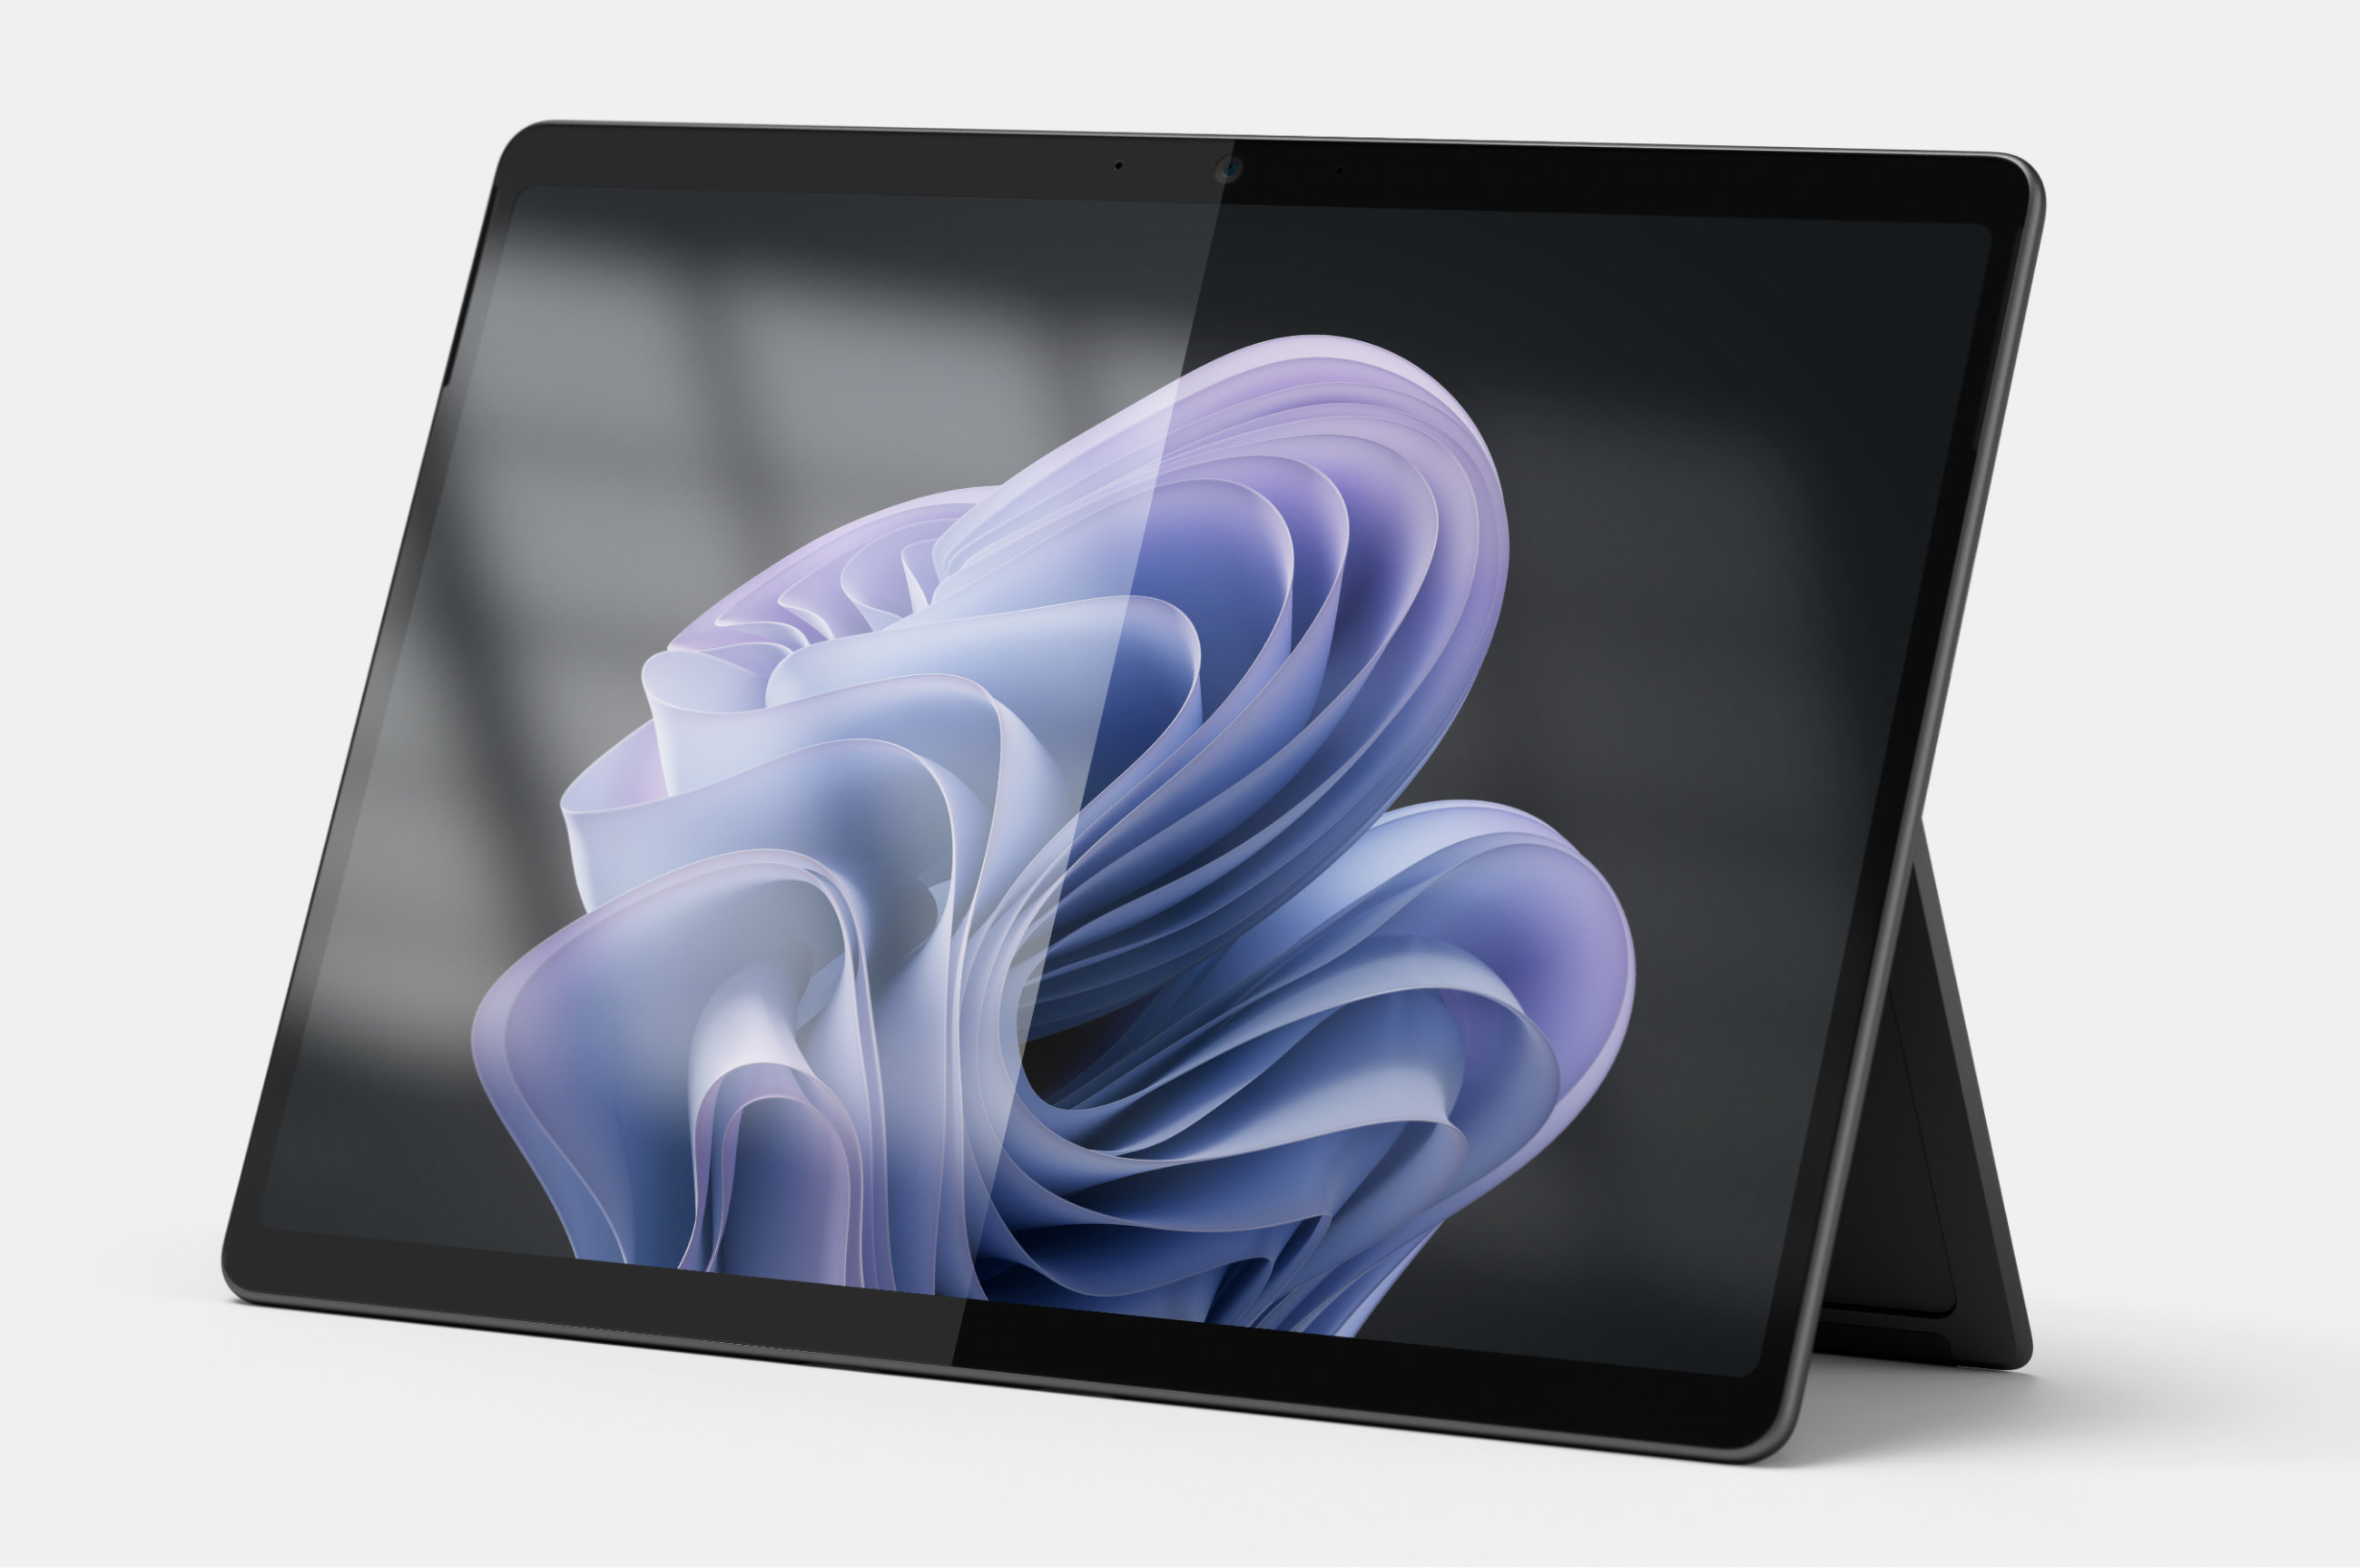 展示 Surface Pro 10，顯示抗反射式螢幕與非反射式螢幕之間的差異